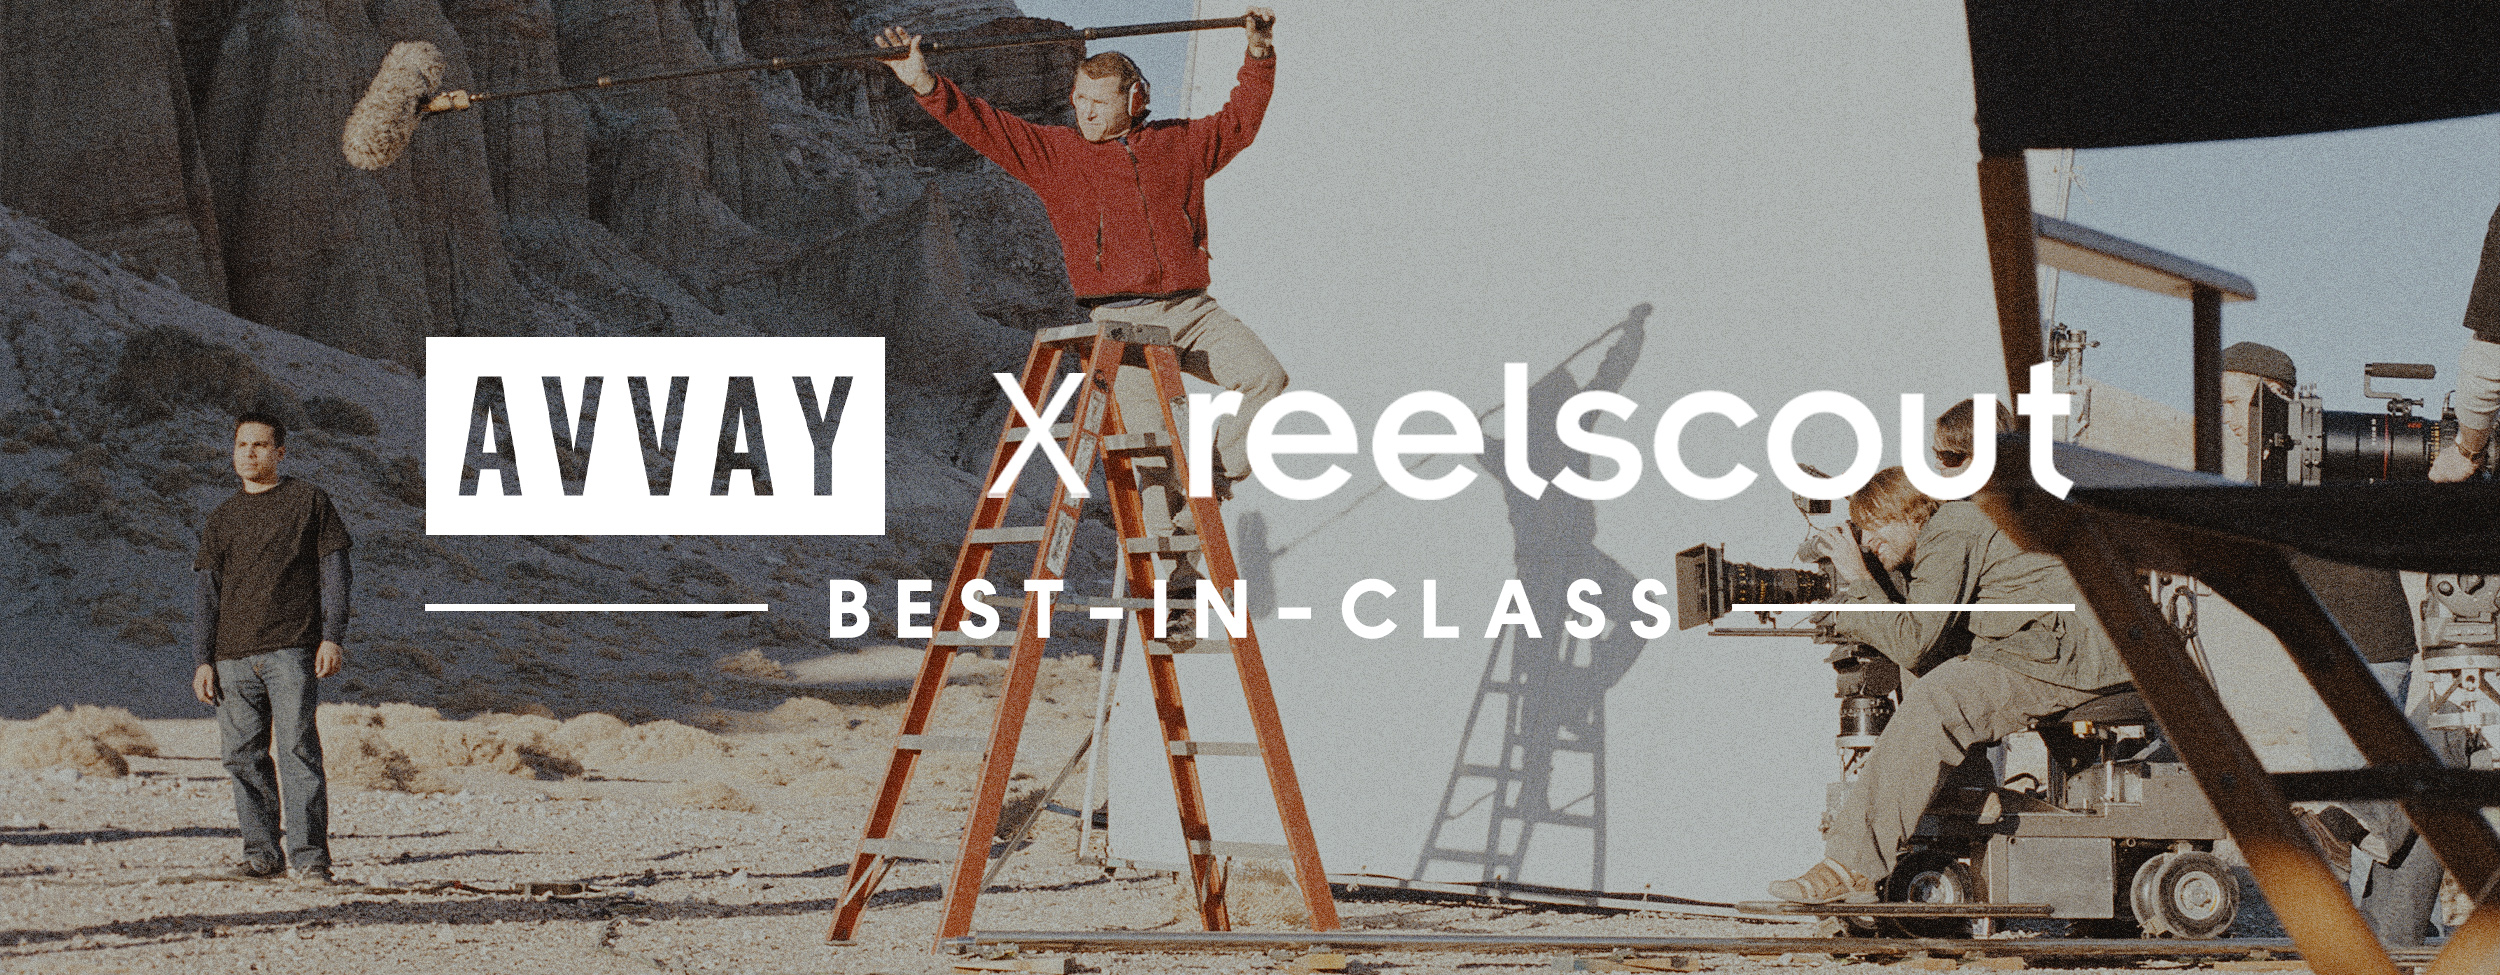 Best Photographers in Nashville: AVVAY X Reel-Scout Best In Class